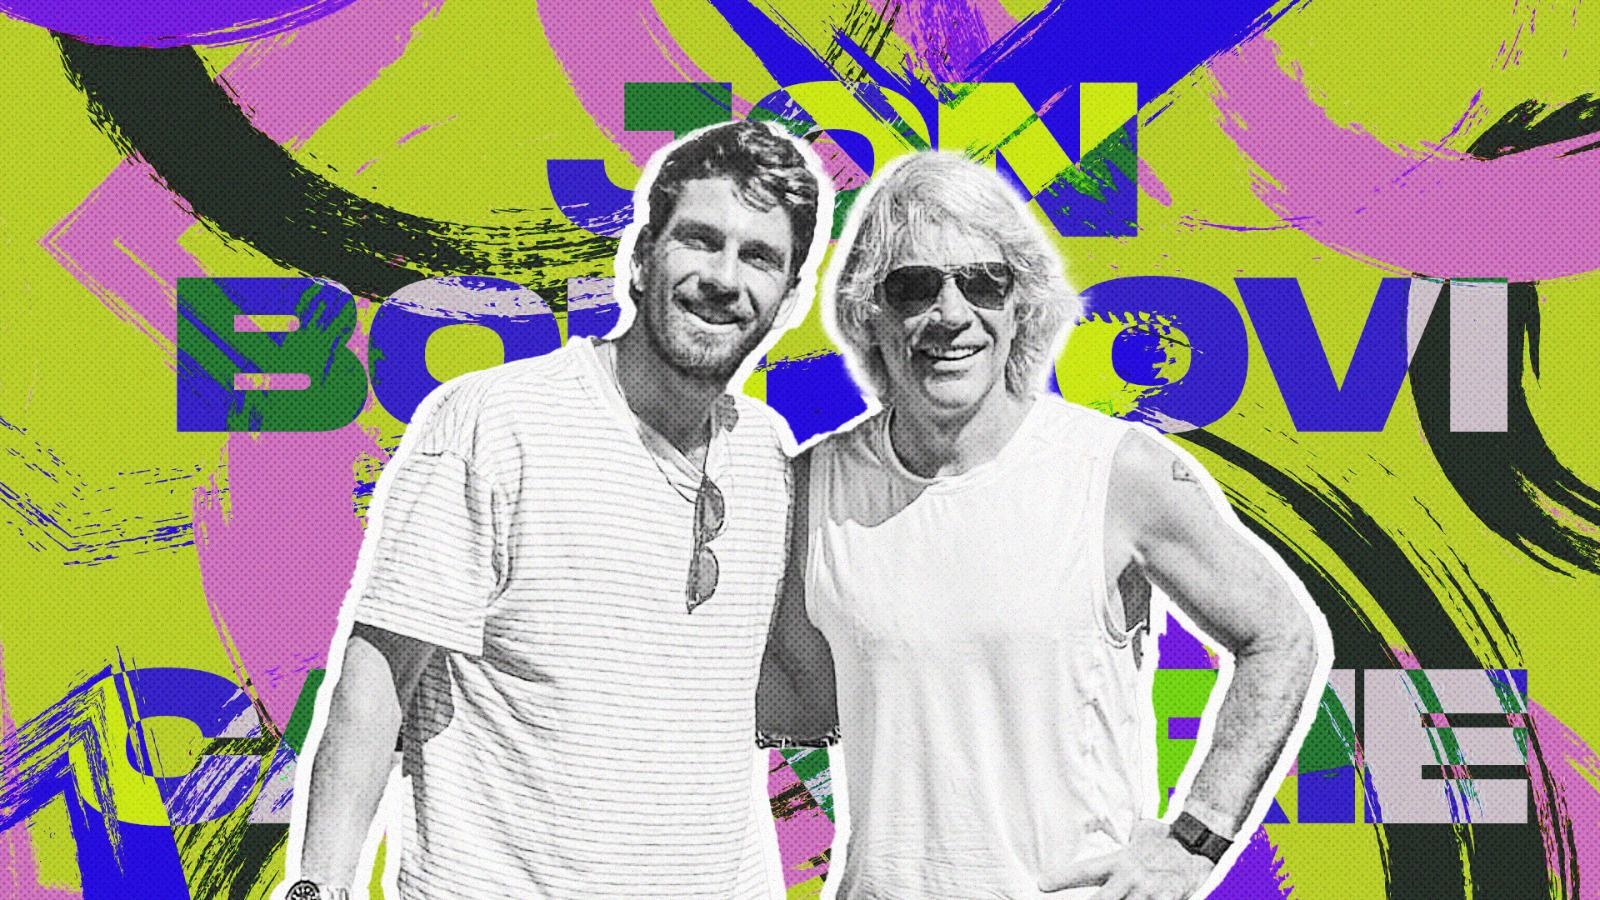 Cameron Norrie dan Jon Bon Jovi sama-sama membagikan foto mereka setelah bermain tenis bersama bulan lalu (Dede Mauladi/Skor.id).